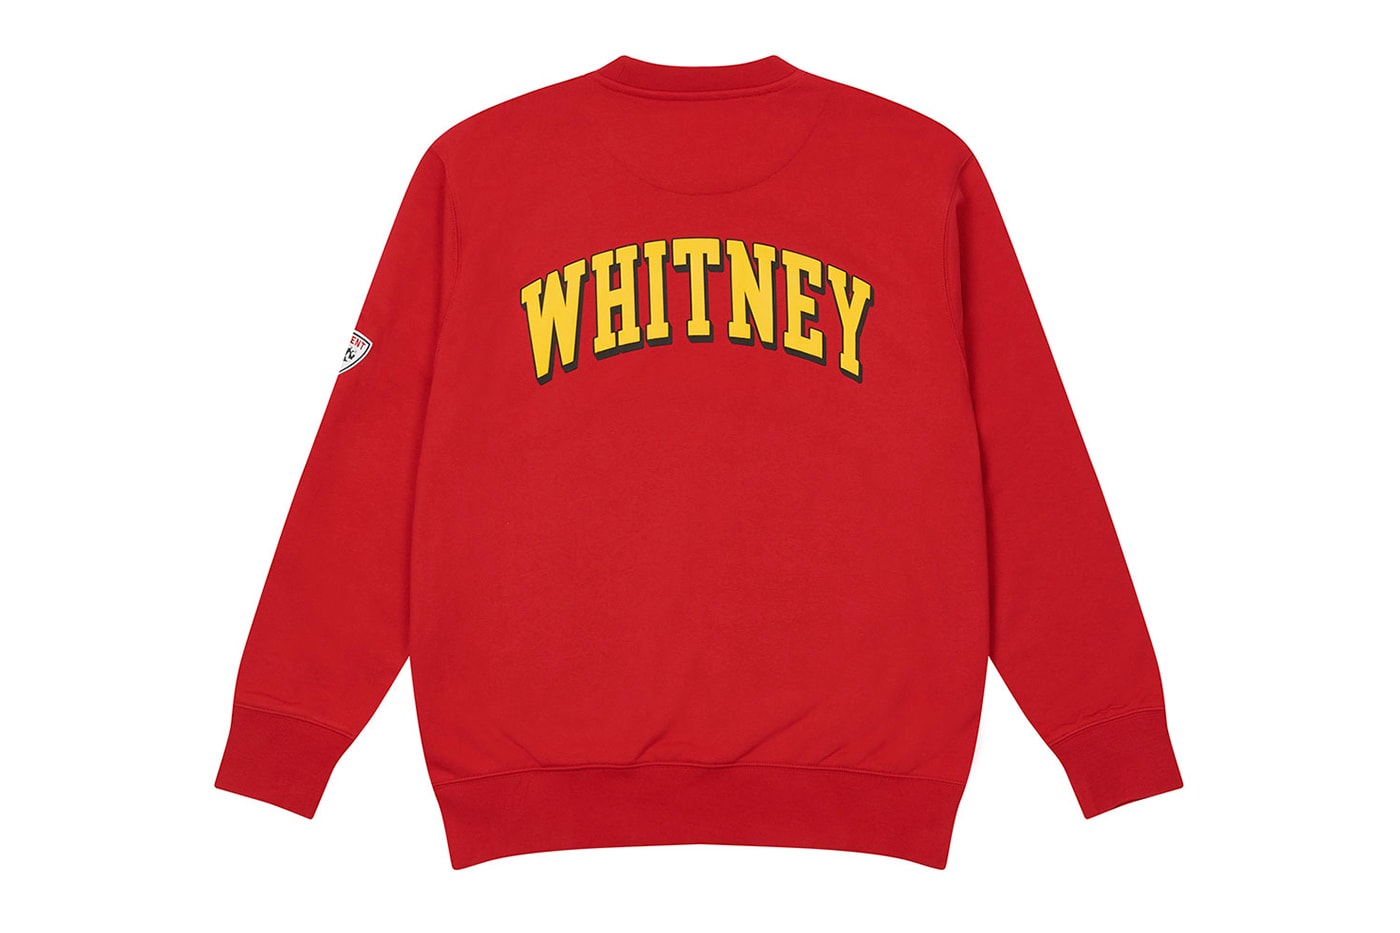 whitney houston palace skateboards collaboration varsity jackets sweatshirts charity foundation release